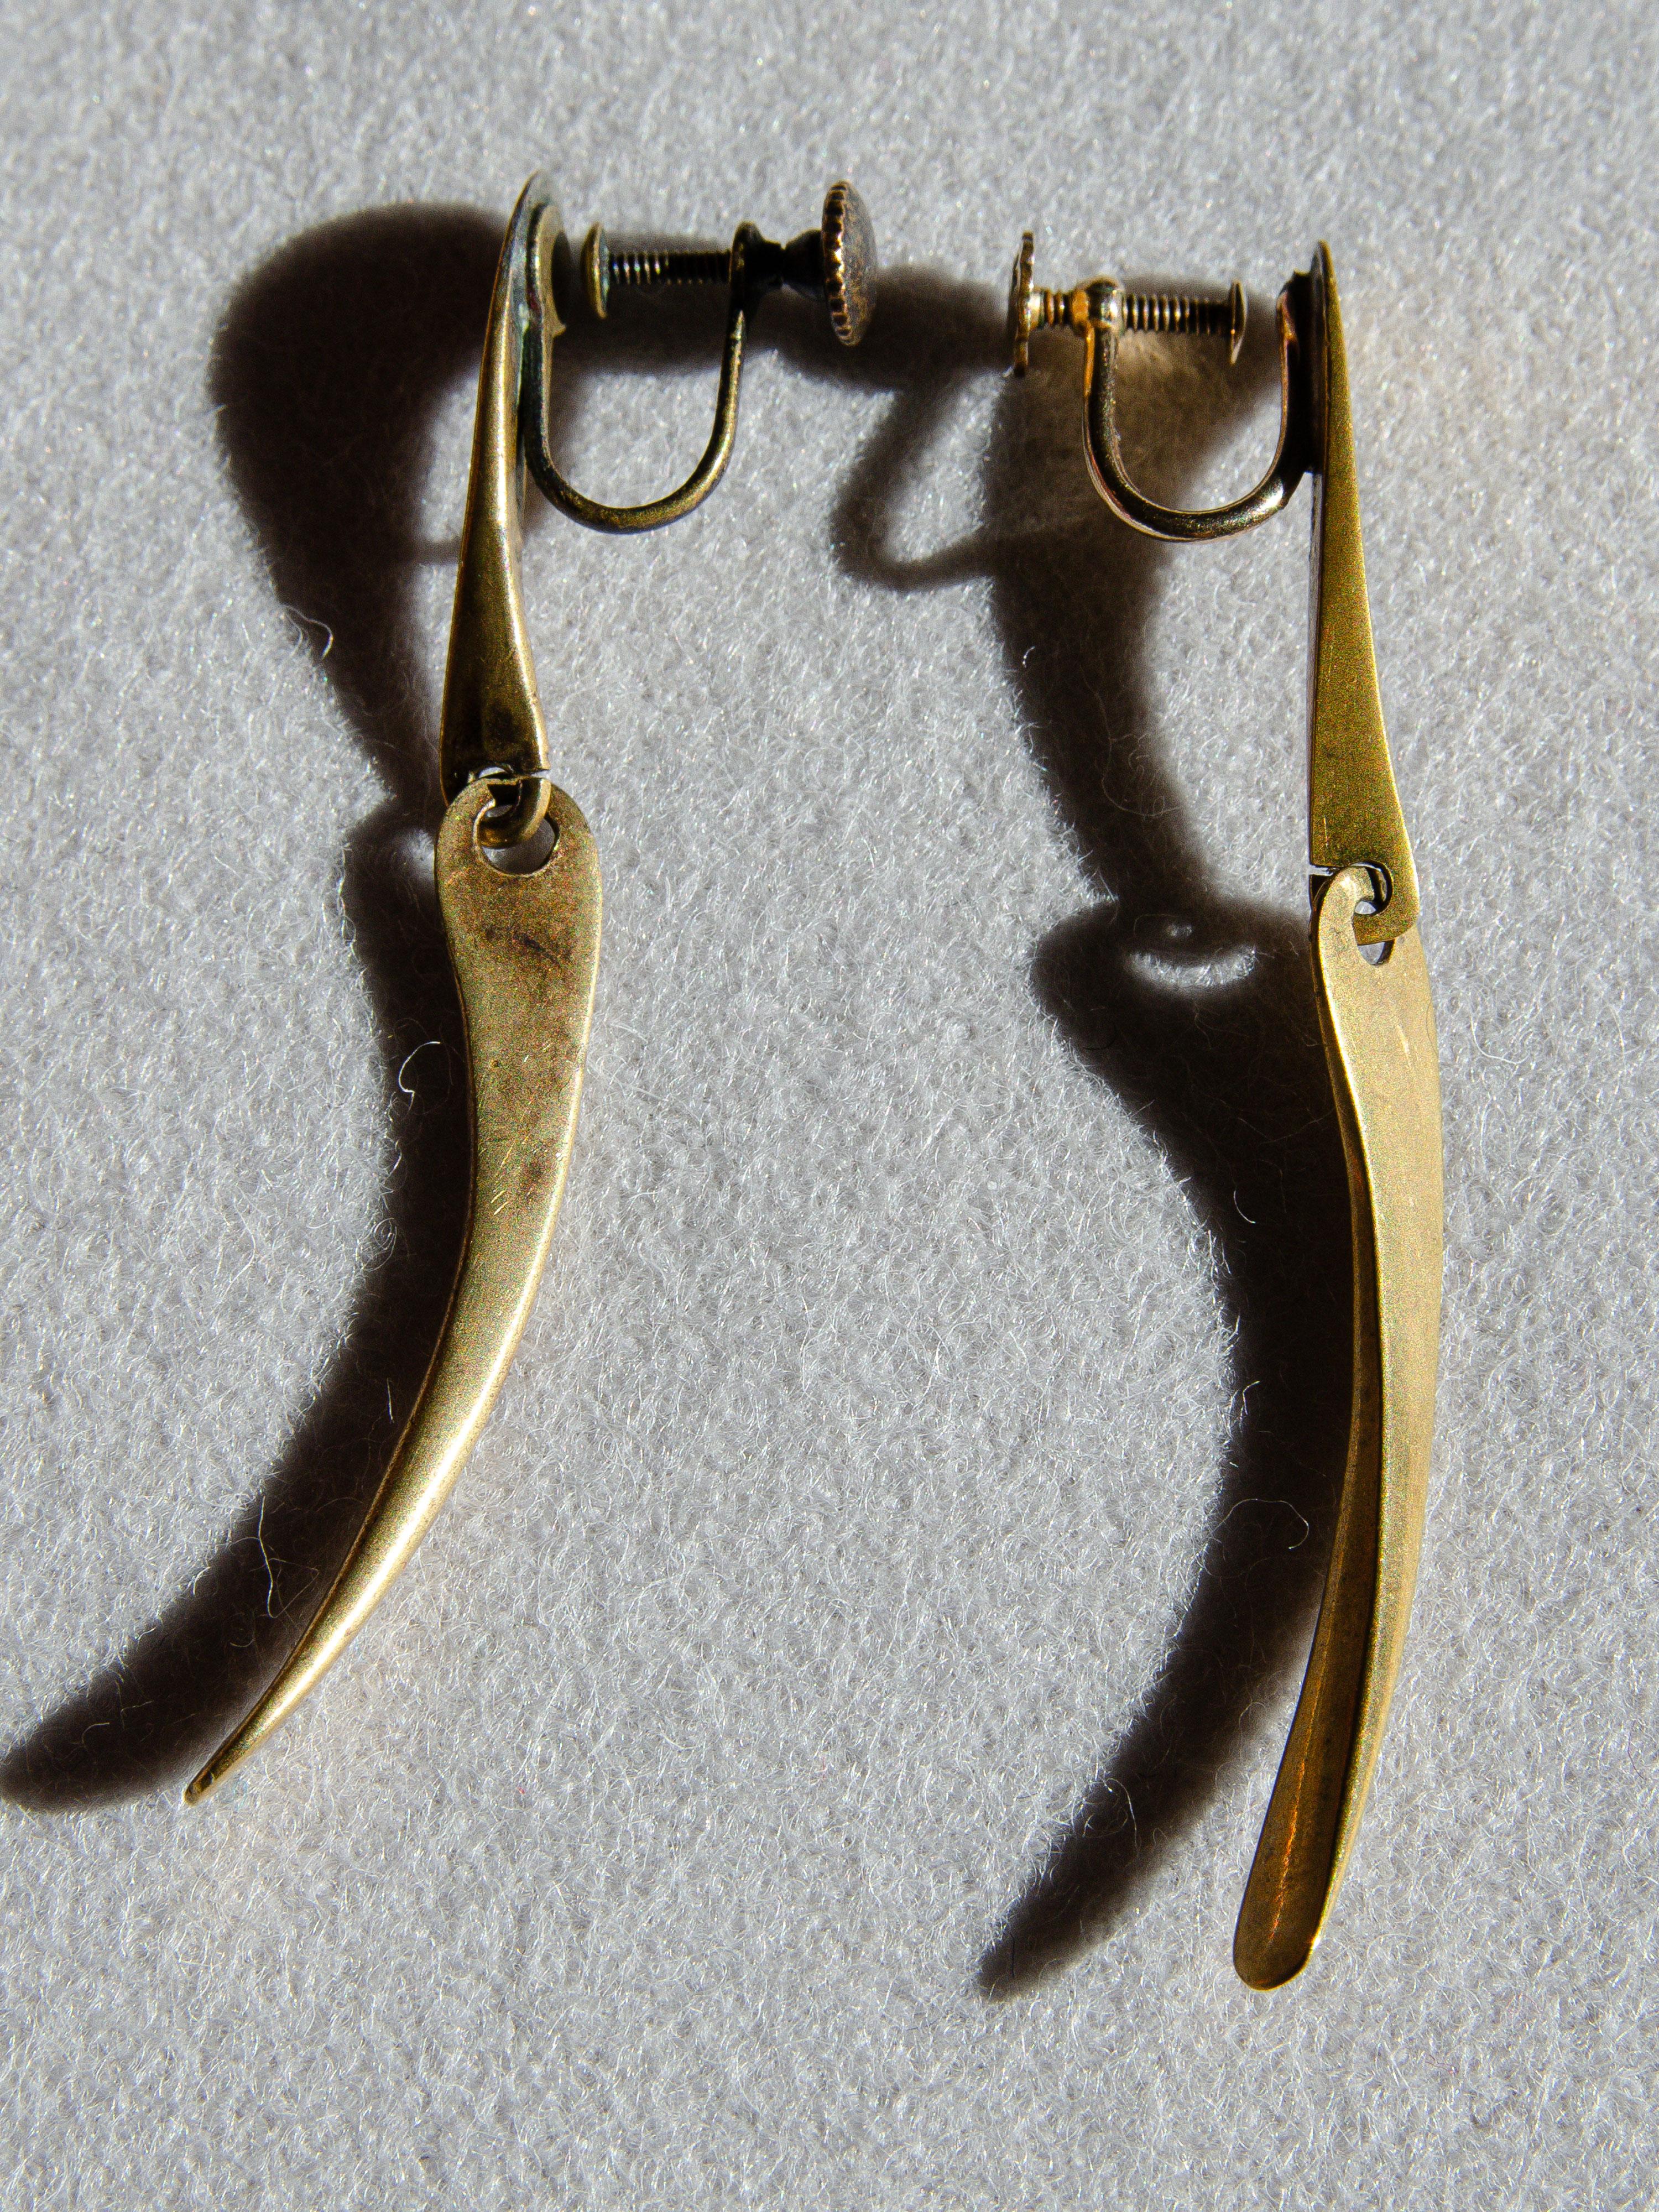 Dieses seltene Paar Ohrringe mit 2 Anhängern aus Messing wurde in den 1950er Jahren vom modernistischen Juwelier Art Smith aus Greenwich Village entworfen. Smith gilt als Meister des Juwelierhandwerks während der modernistischen Bewegung in der